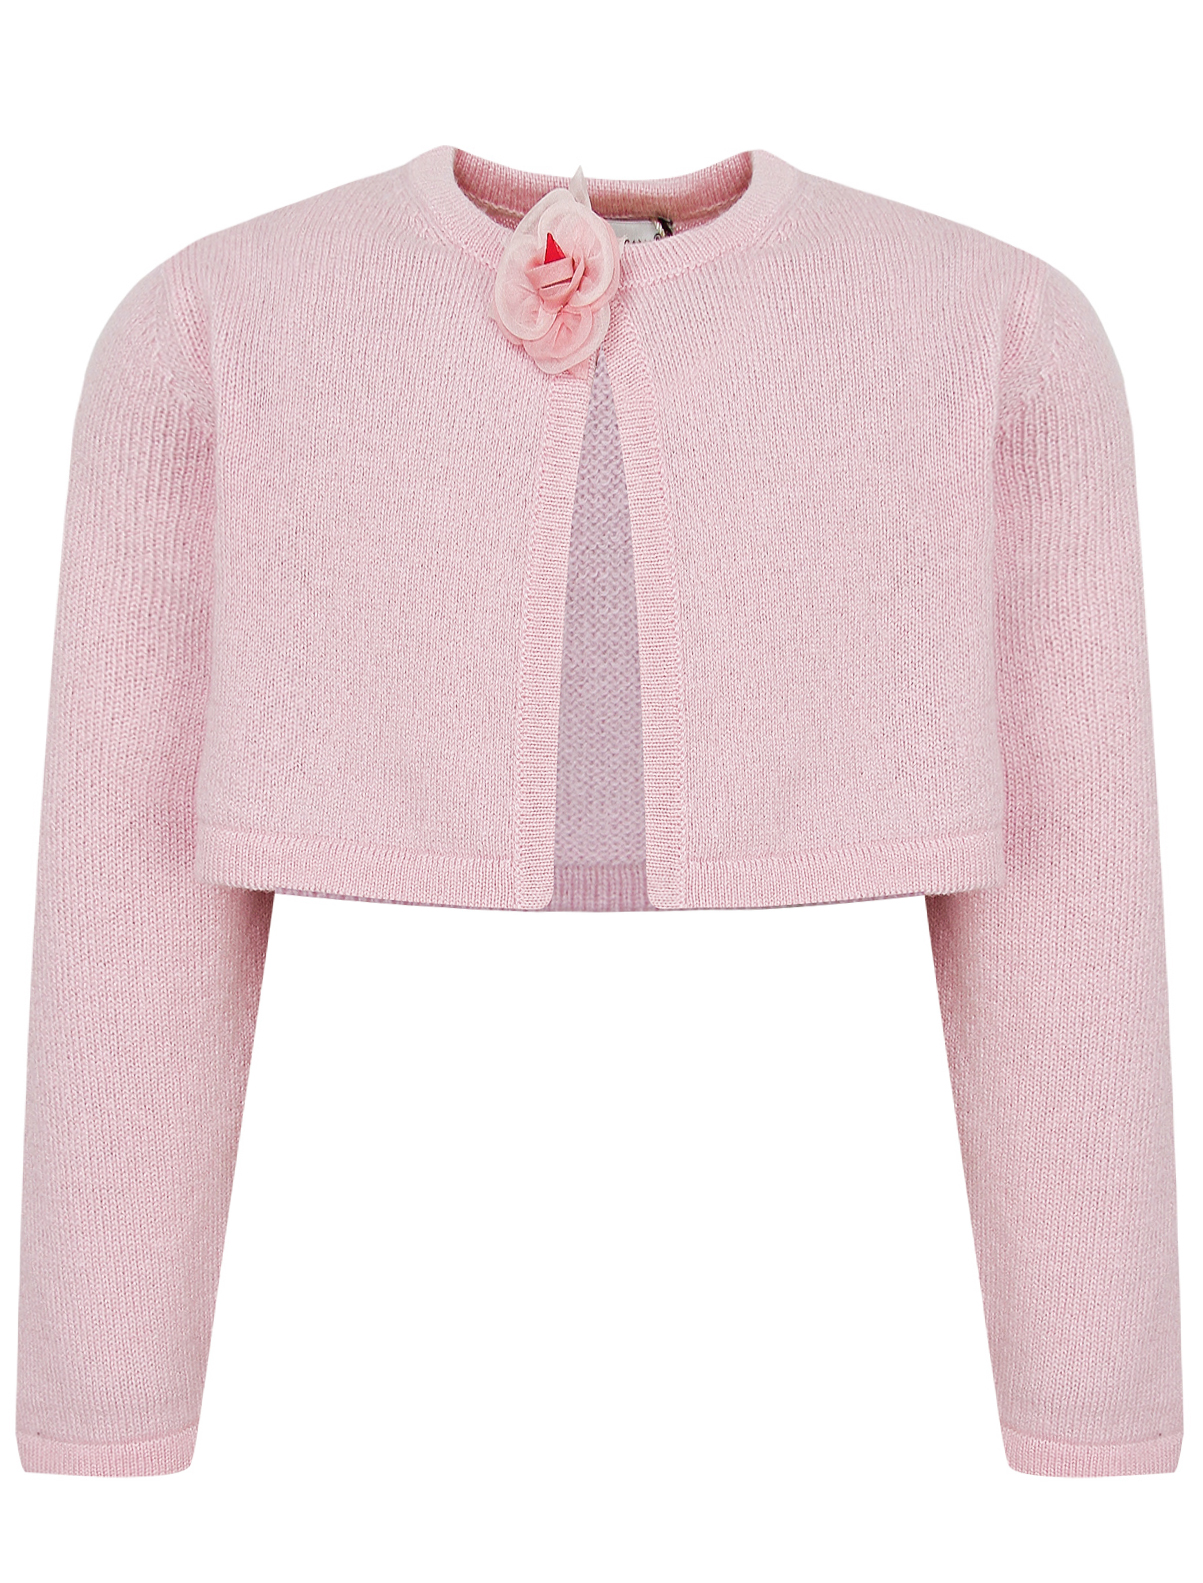 Болеро Dolce & Gabbana 2175279, цвет розовый, размер 18